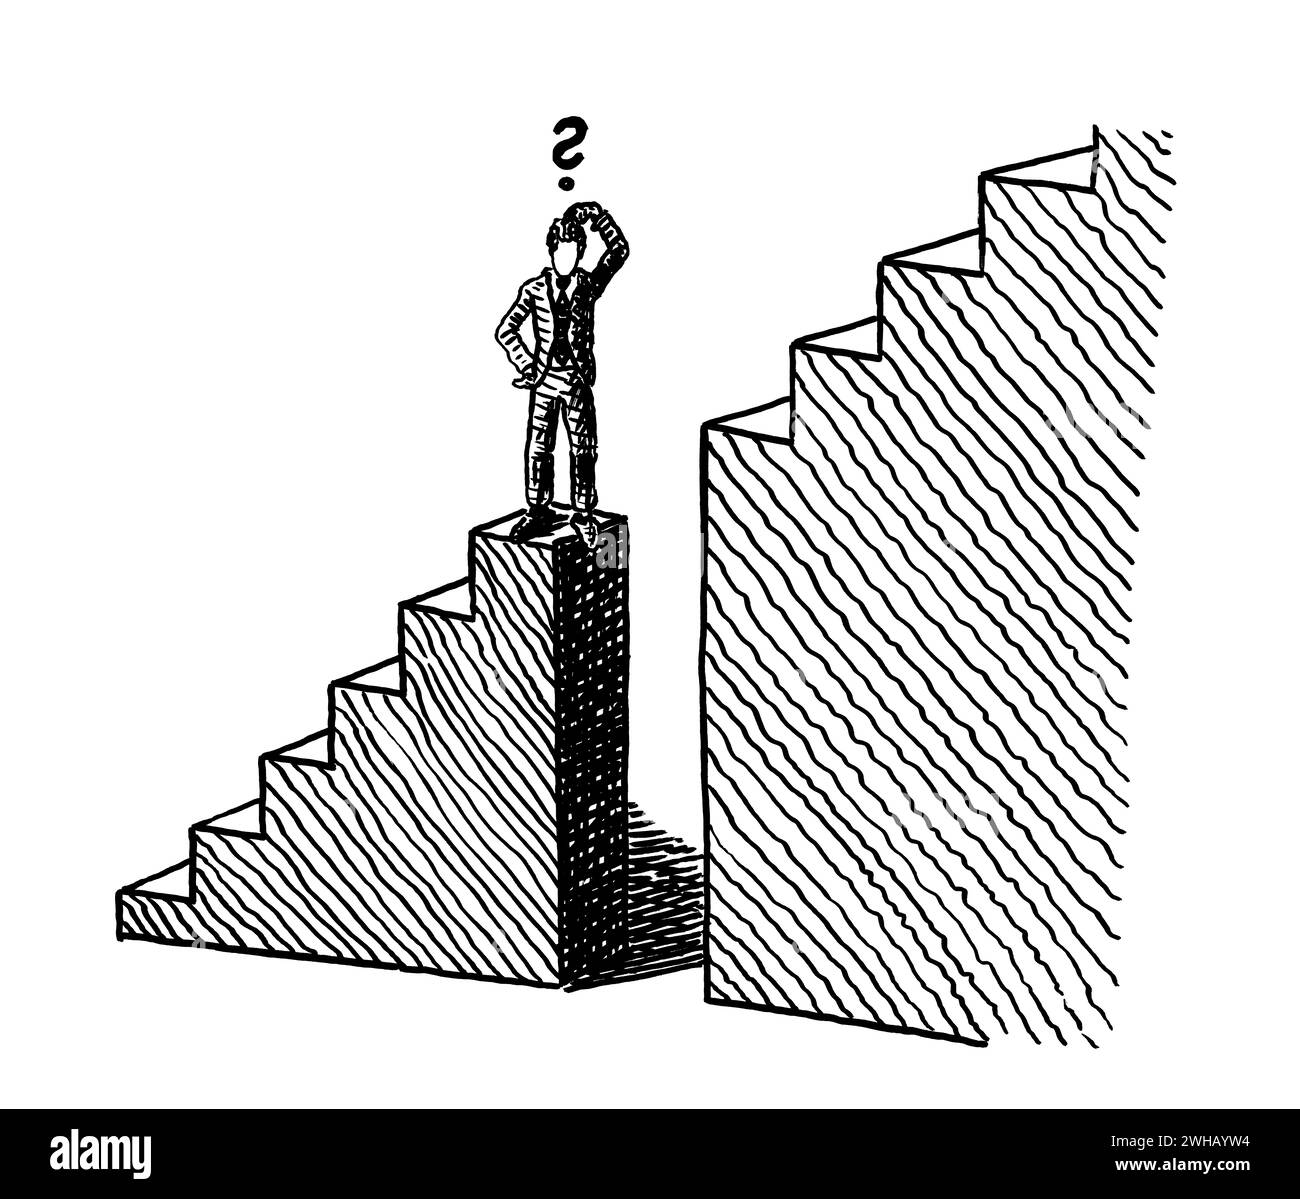 Freihändige Linienzeichnung eines Geschäftsmannes, der am Rande einer tiefen Lücke in einer Treppe steht, auf dem Weg zum Erfolg. Metapher für die Überwindung von Gegnern Stockfoto